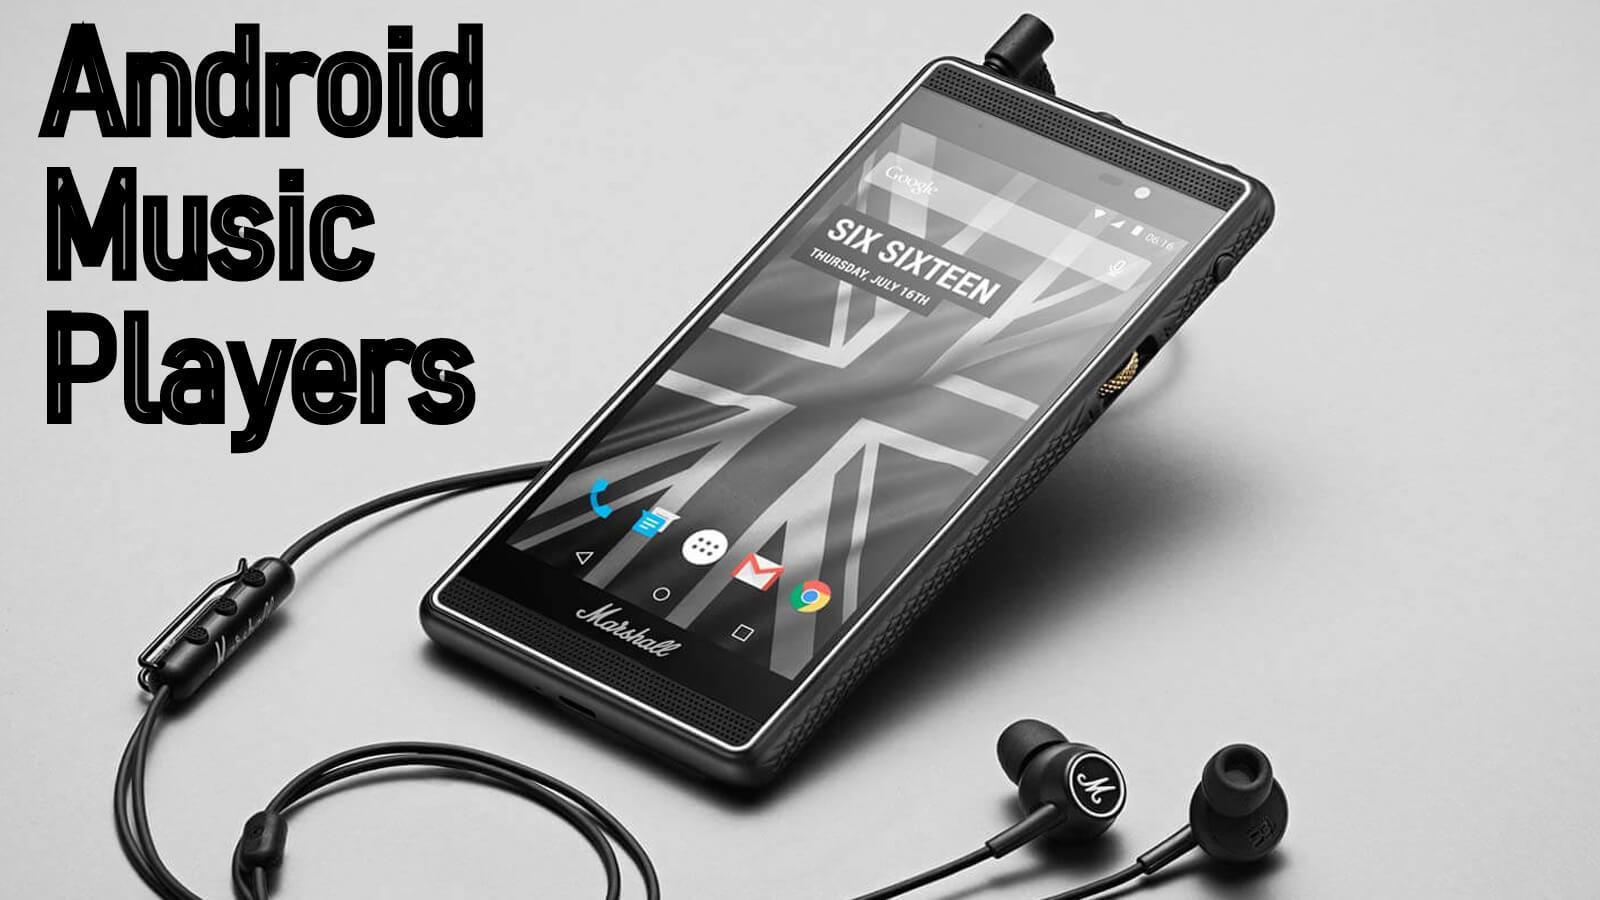 2020an izan behar dituzun Android musikako 10 erreproduzitzaile onenak
